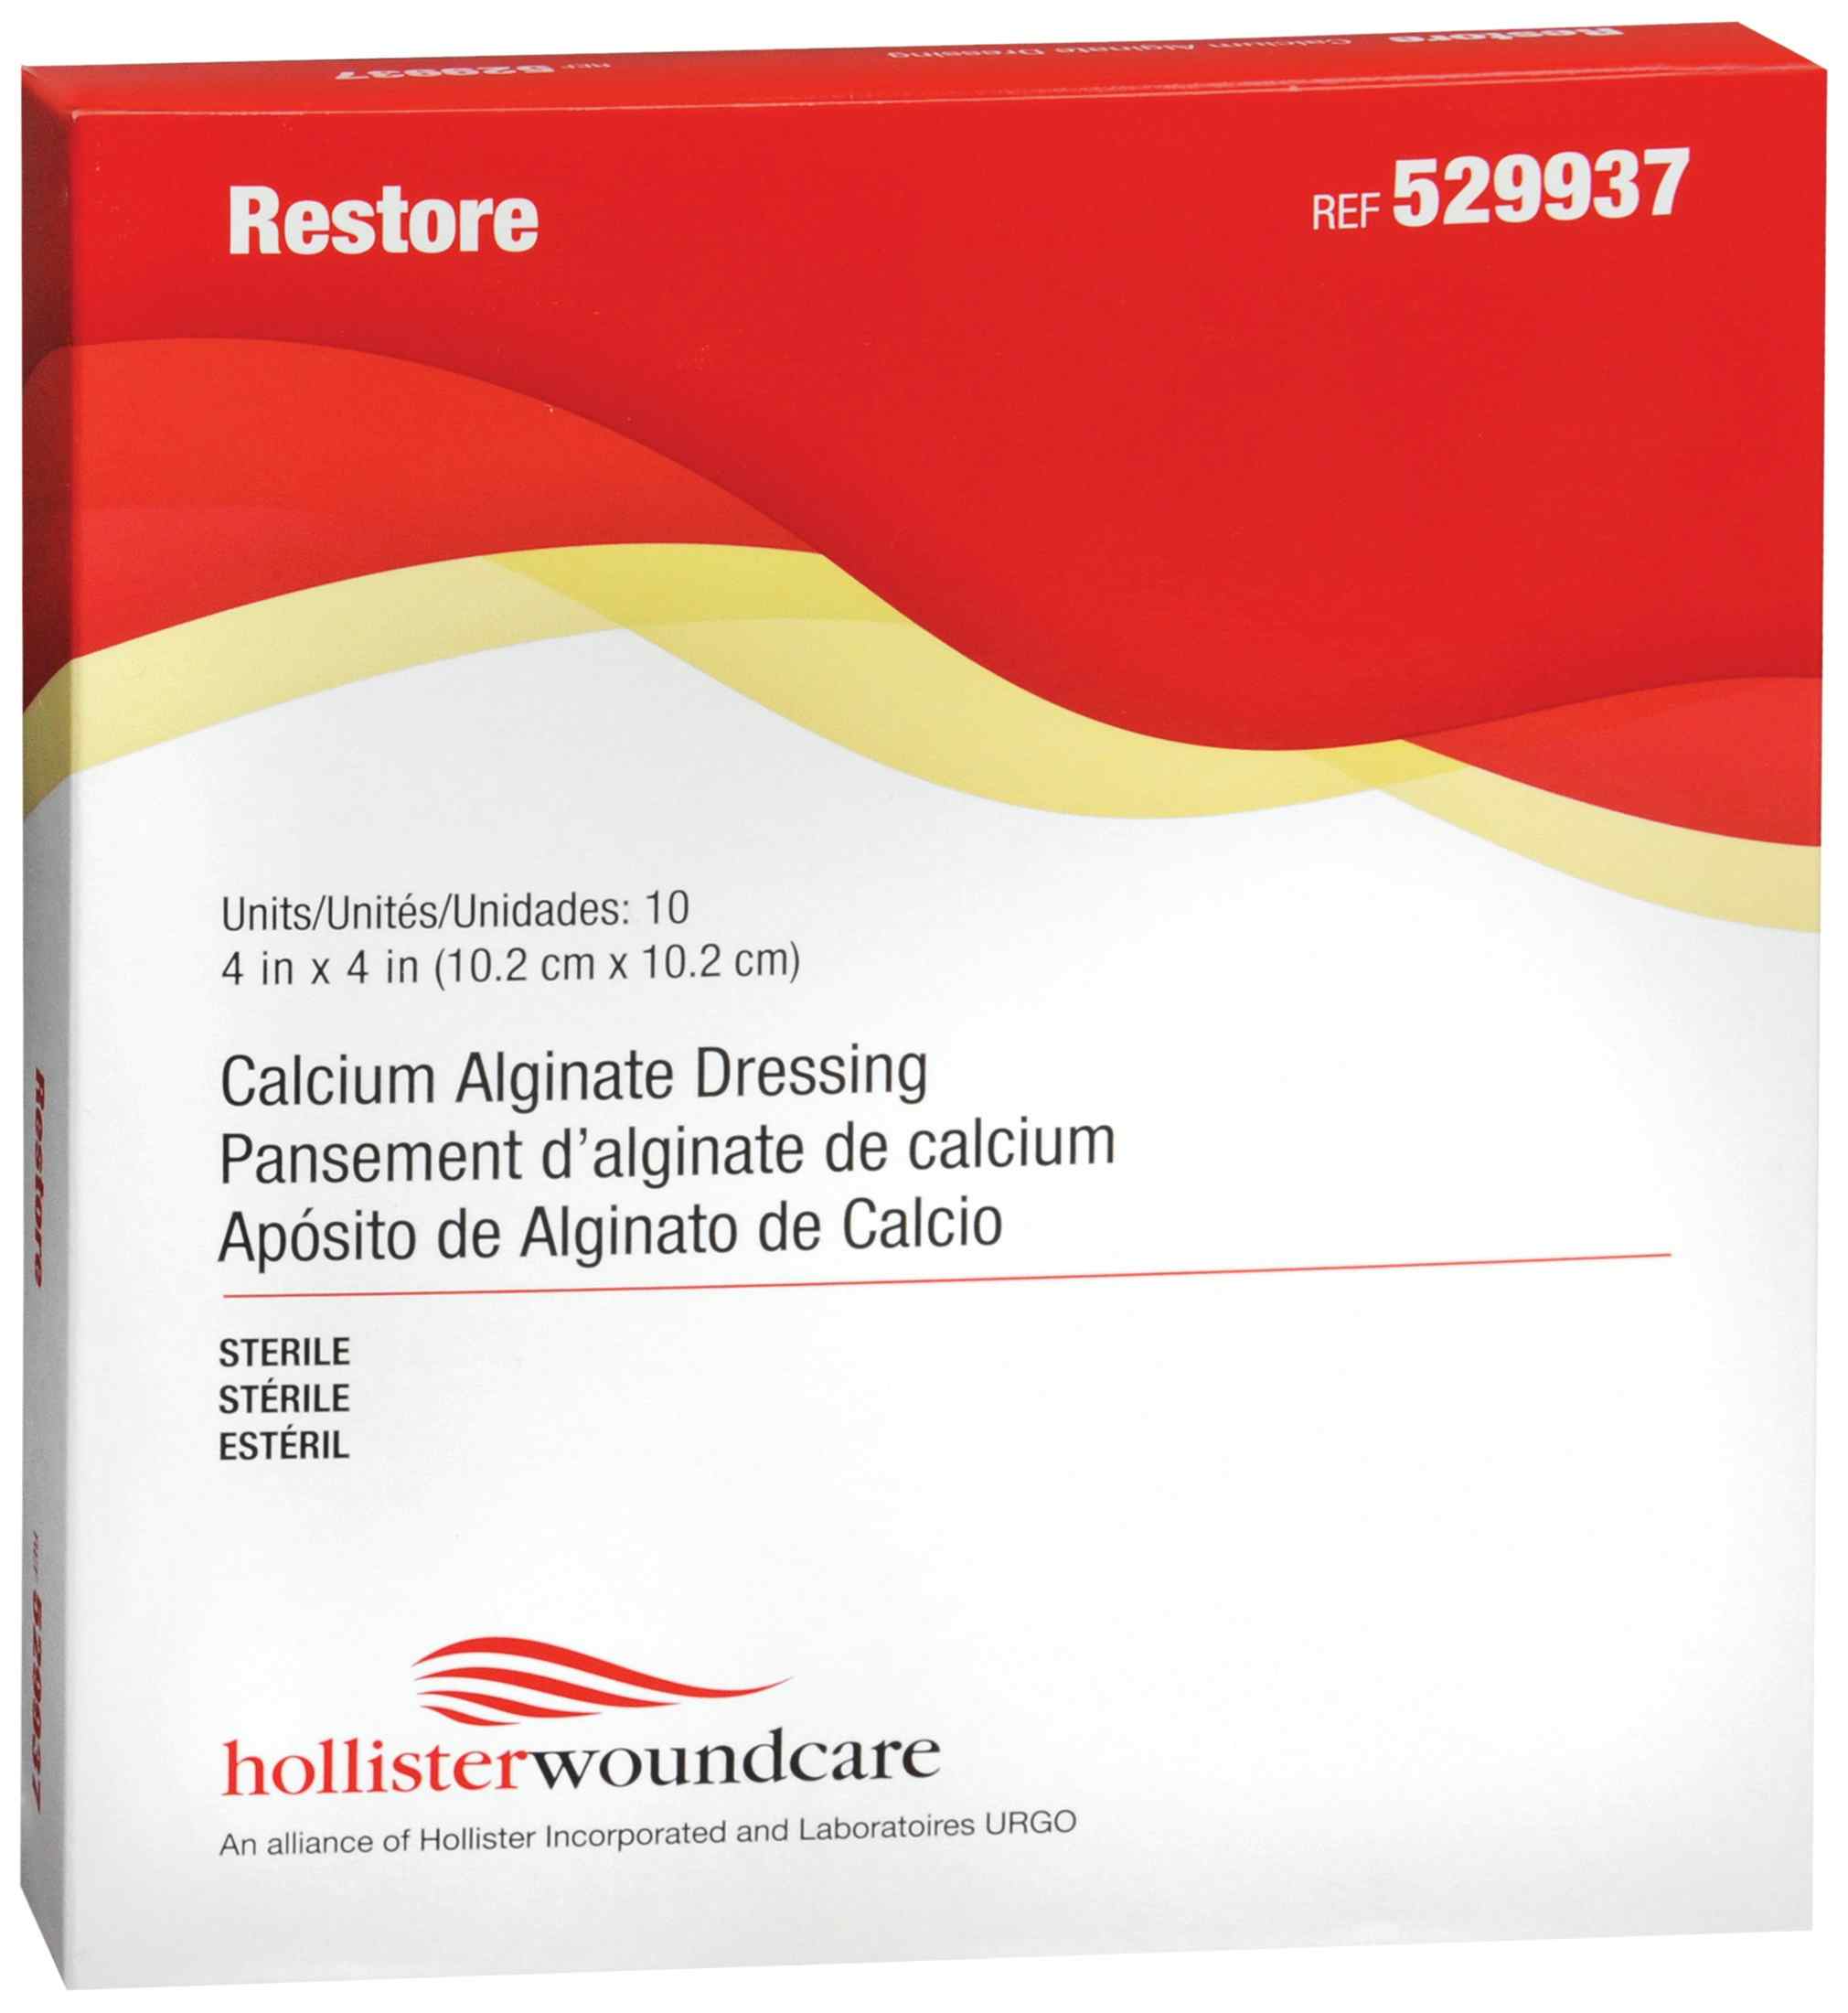 Hollister Restore Calcium Alginate Dressing, 4 X 4", 529937, Box of 10